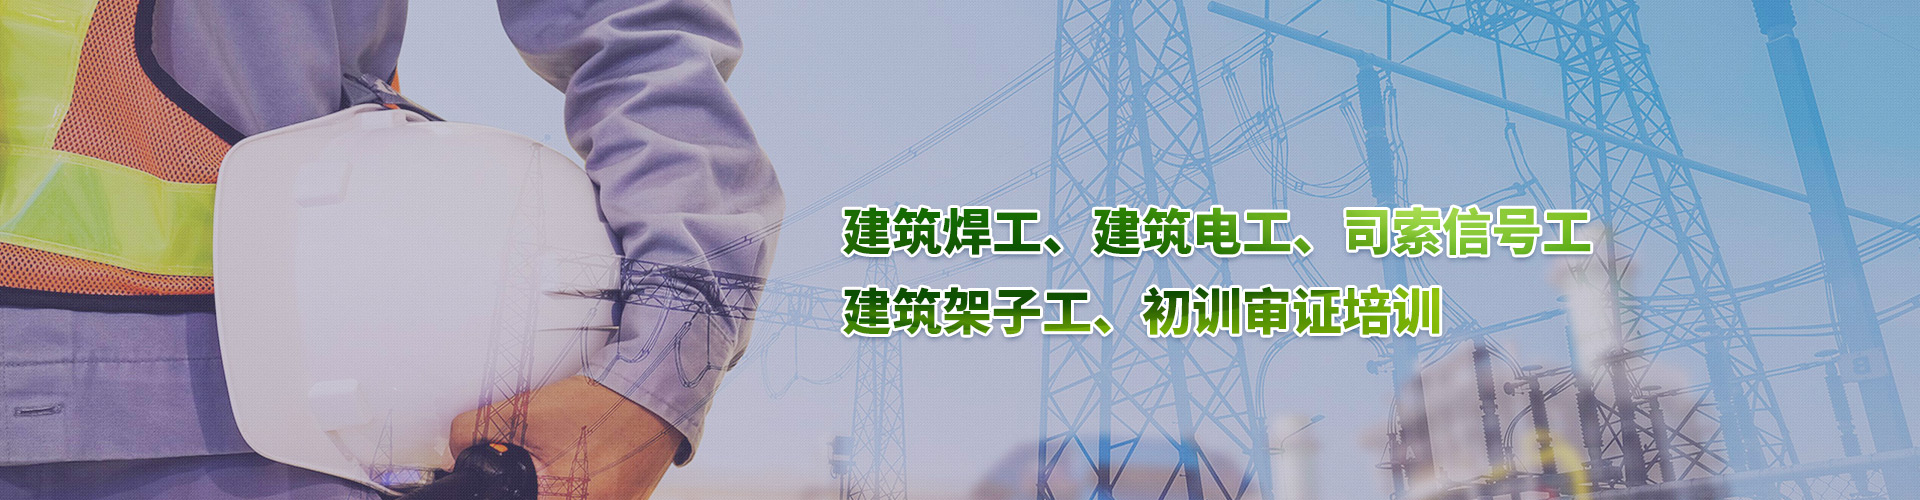 上海建筑电工培训考试 题库模拟